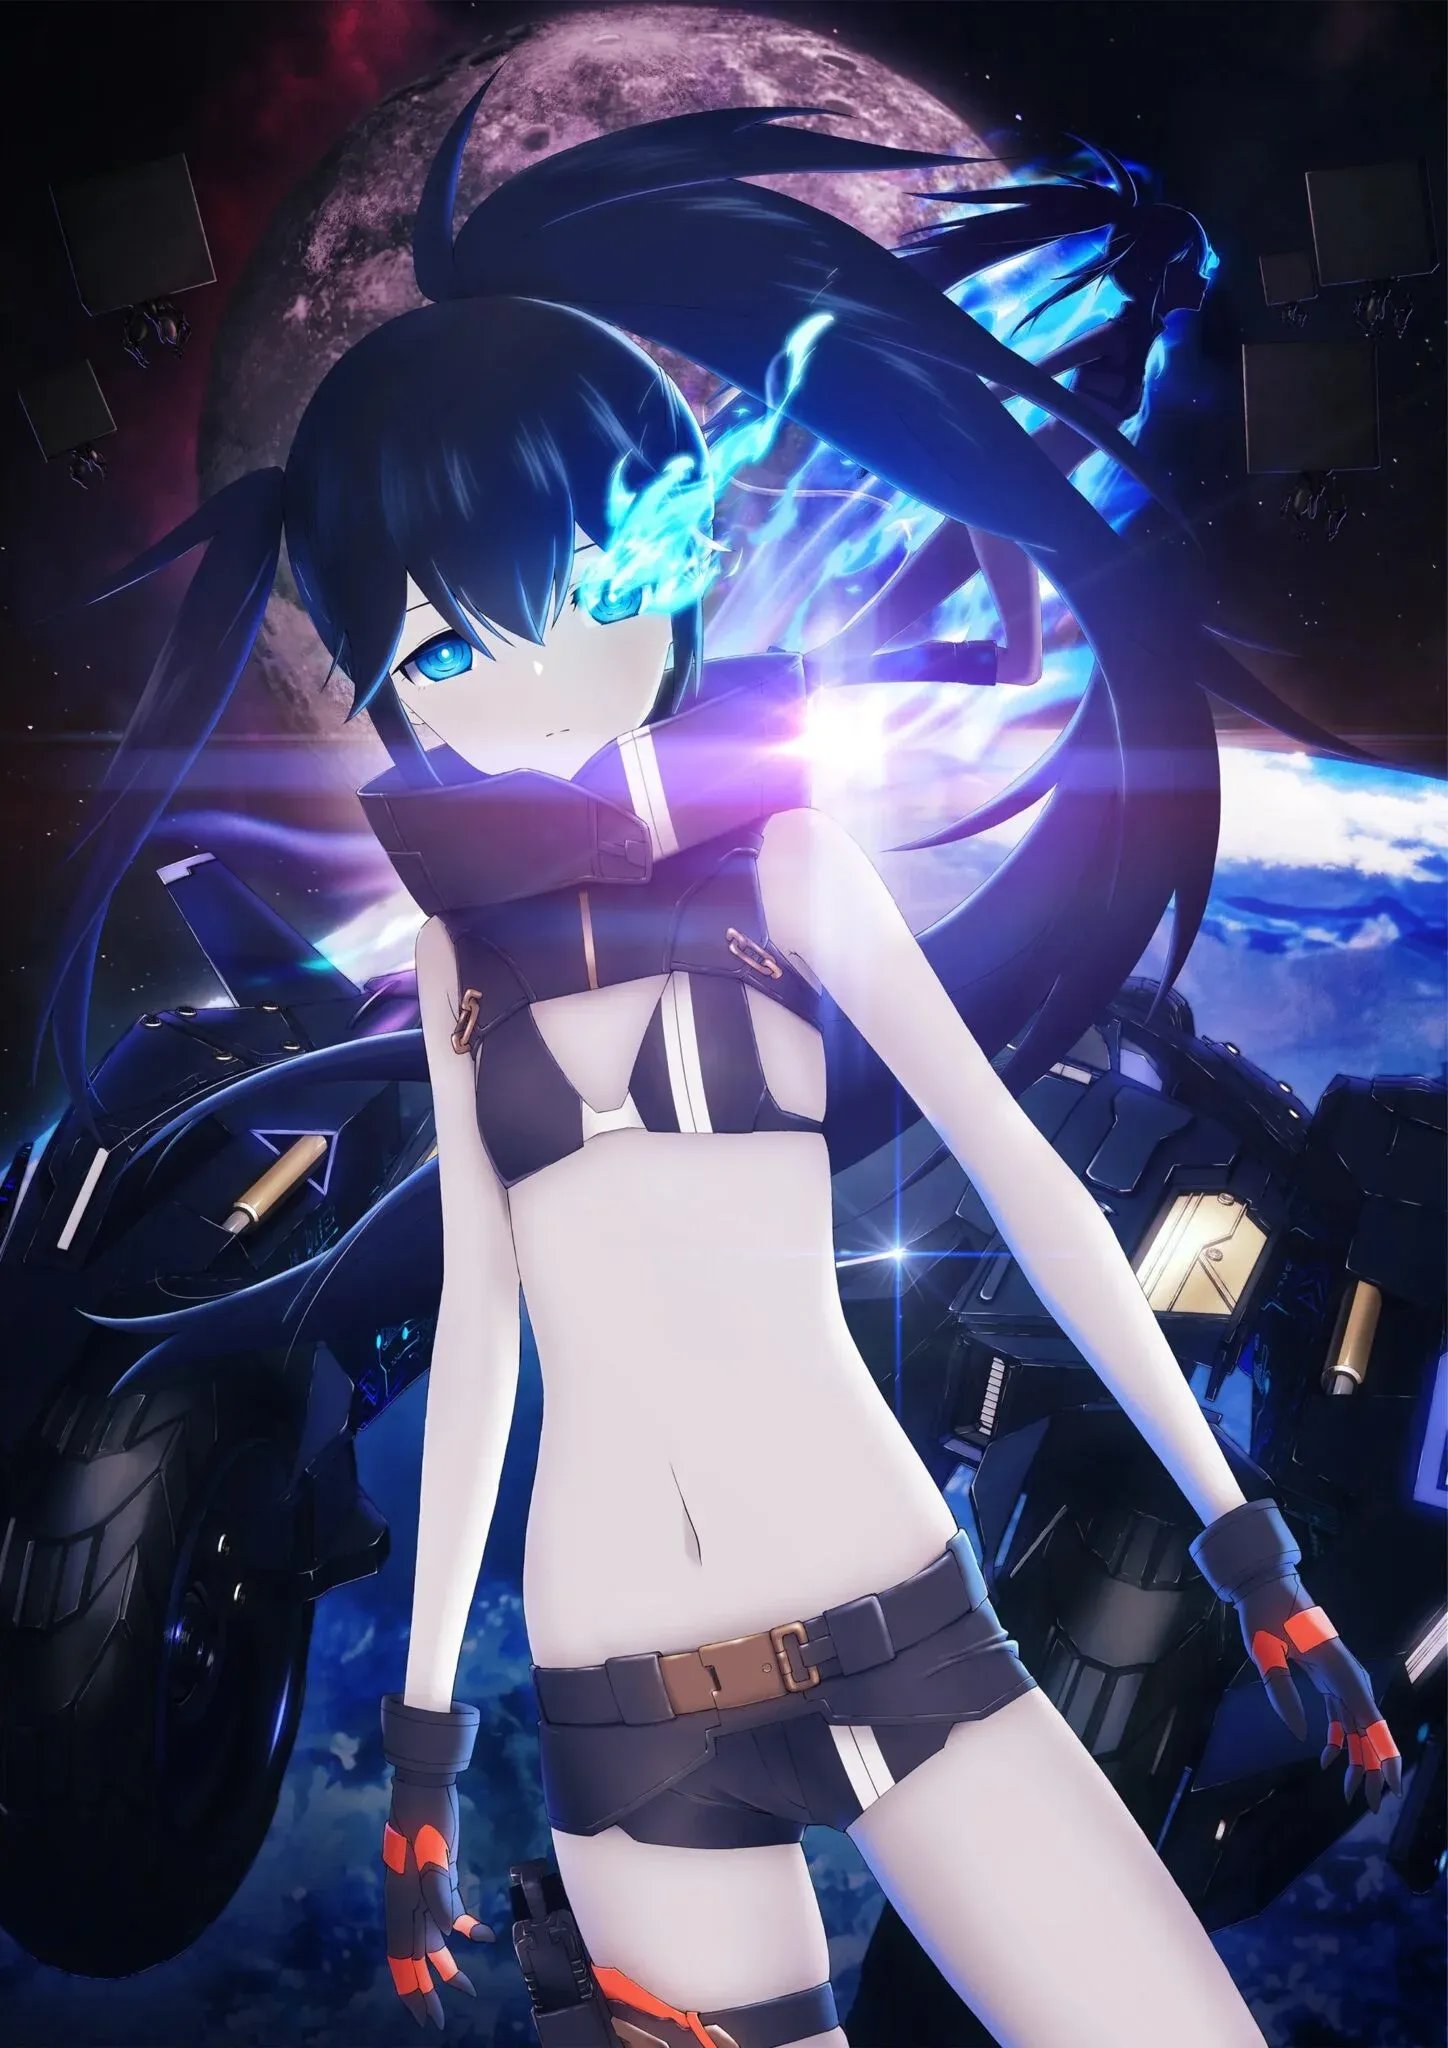 O Anime Black Rock Shooter: Dawn Fall revelou uma Nova Imagem Promocional